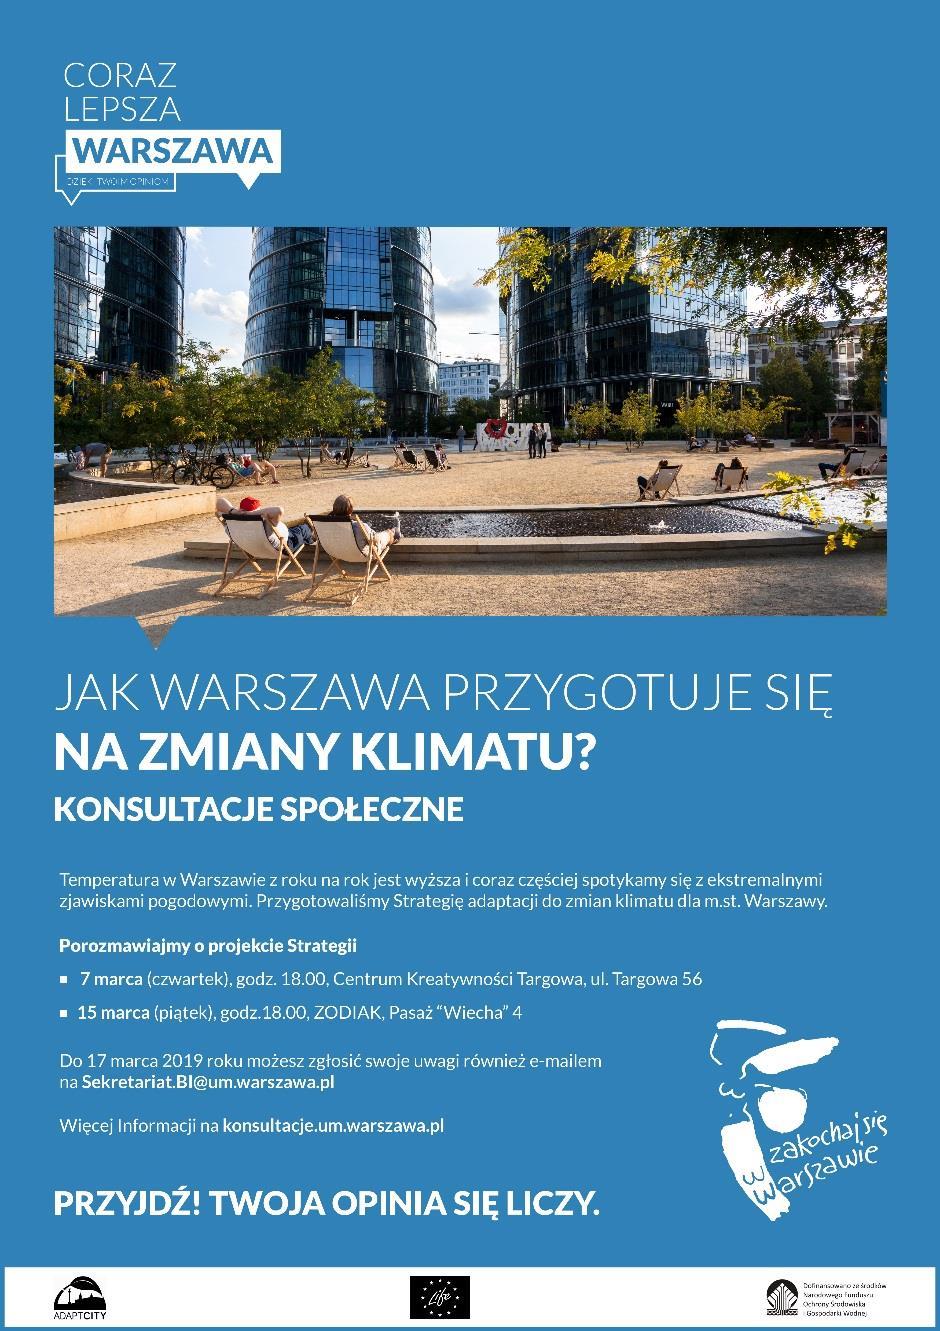 AKCJA INFORMACYJNA O konsultacjach informowaliśmy na plakatach, które zostały zawieszone w biurach Urzędu m.st. Warszawy, dzielnicach, domach kultury i OSiRach.